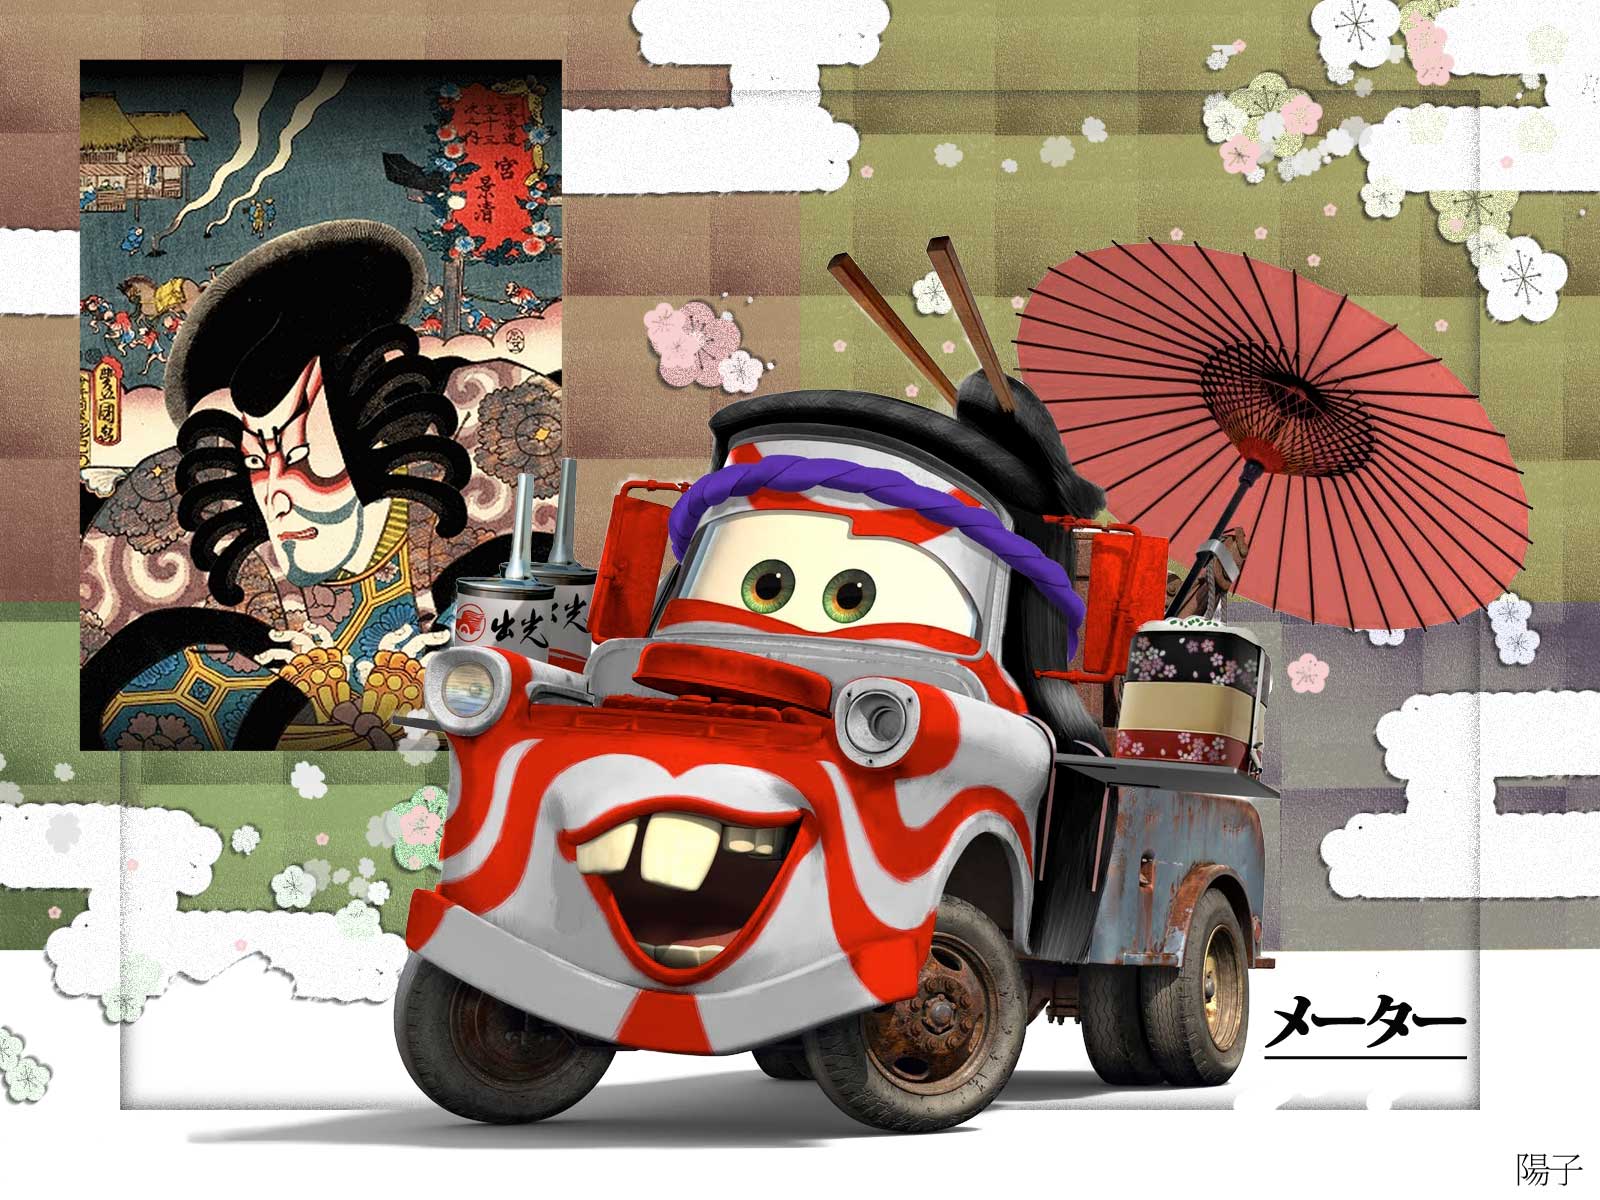 カーズトゥーン メーターの世界つくり話cars Toons Mater S Tall Tales Yoko S Movie Diary